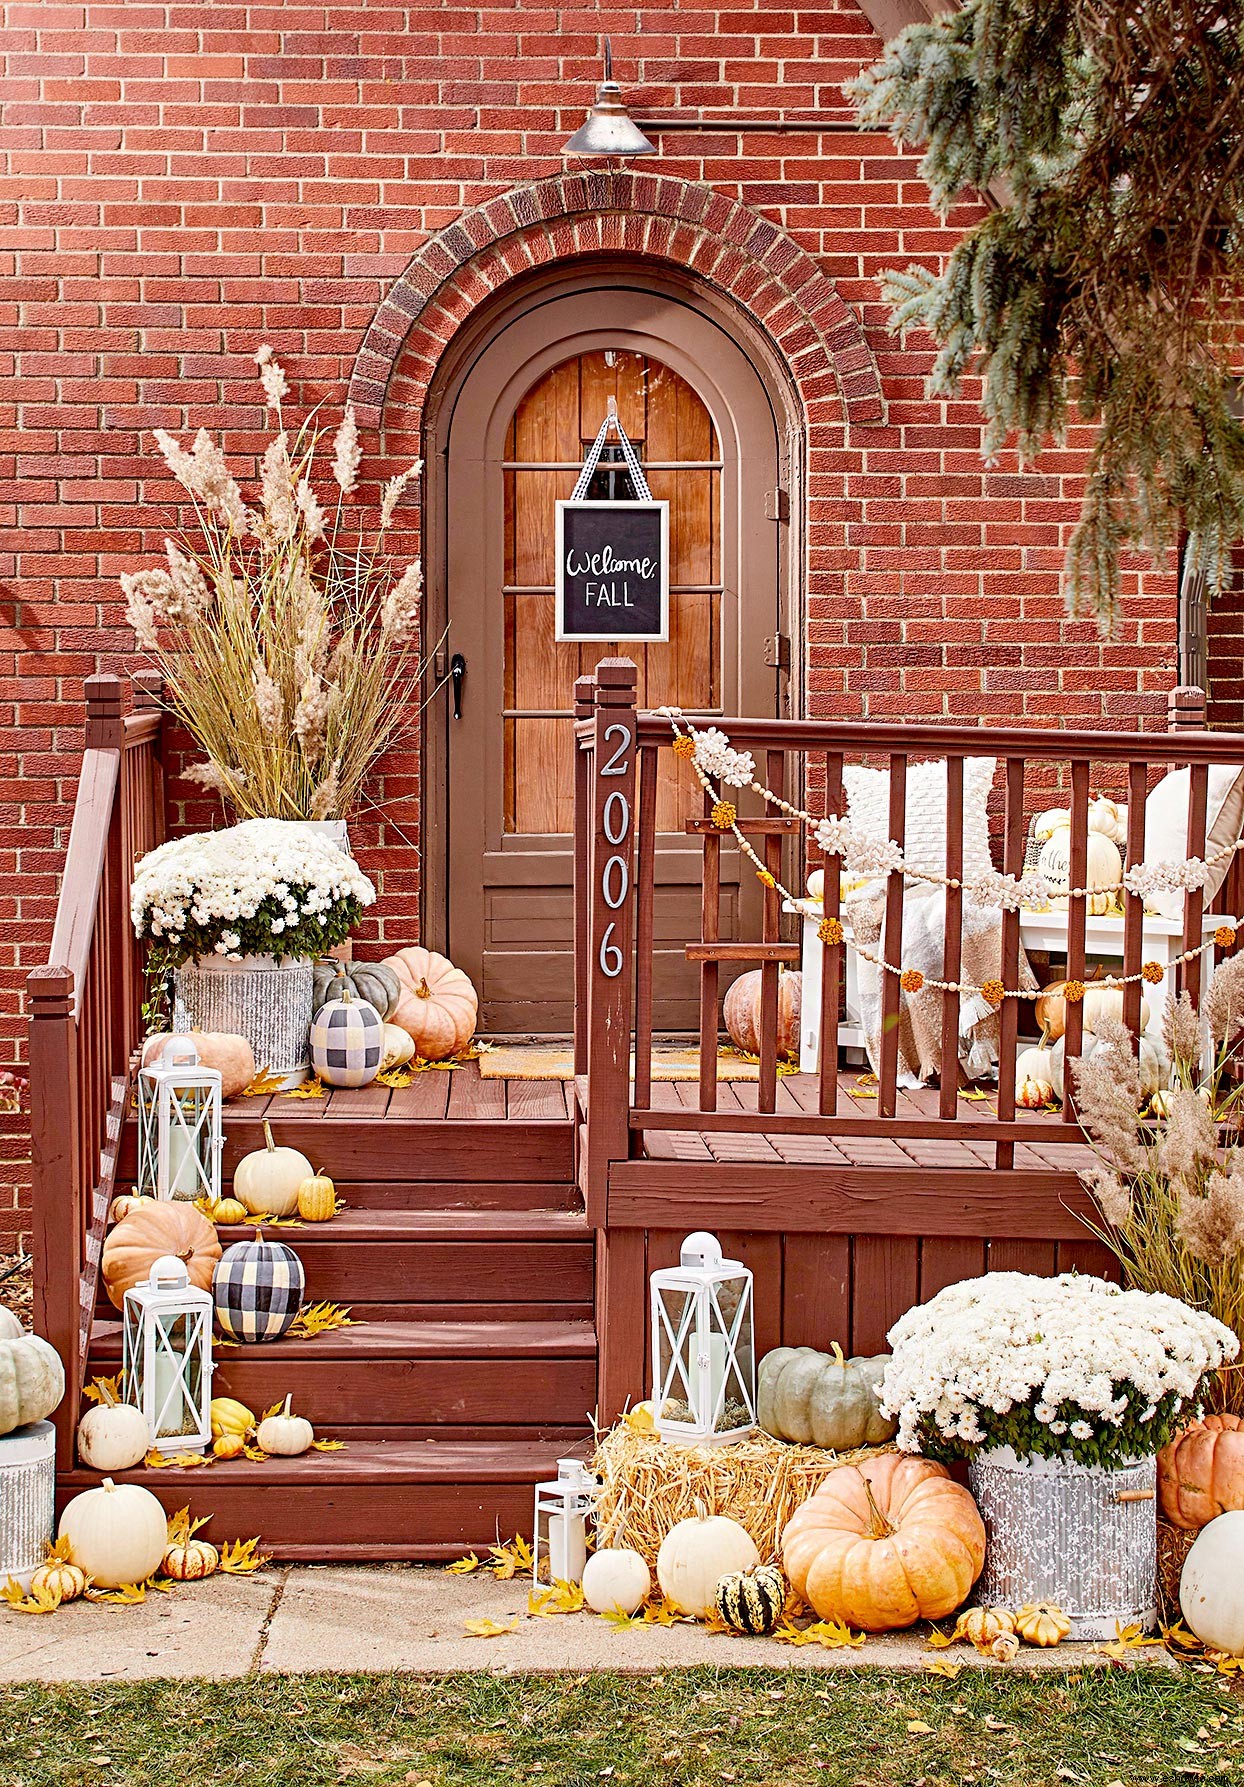 Esta exhibición de puerta de Halloween llena de calabazas es simplemente adorable 